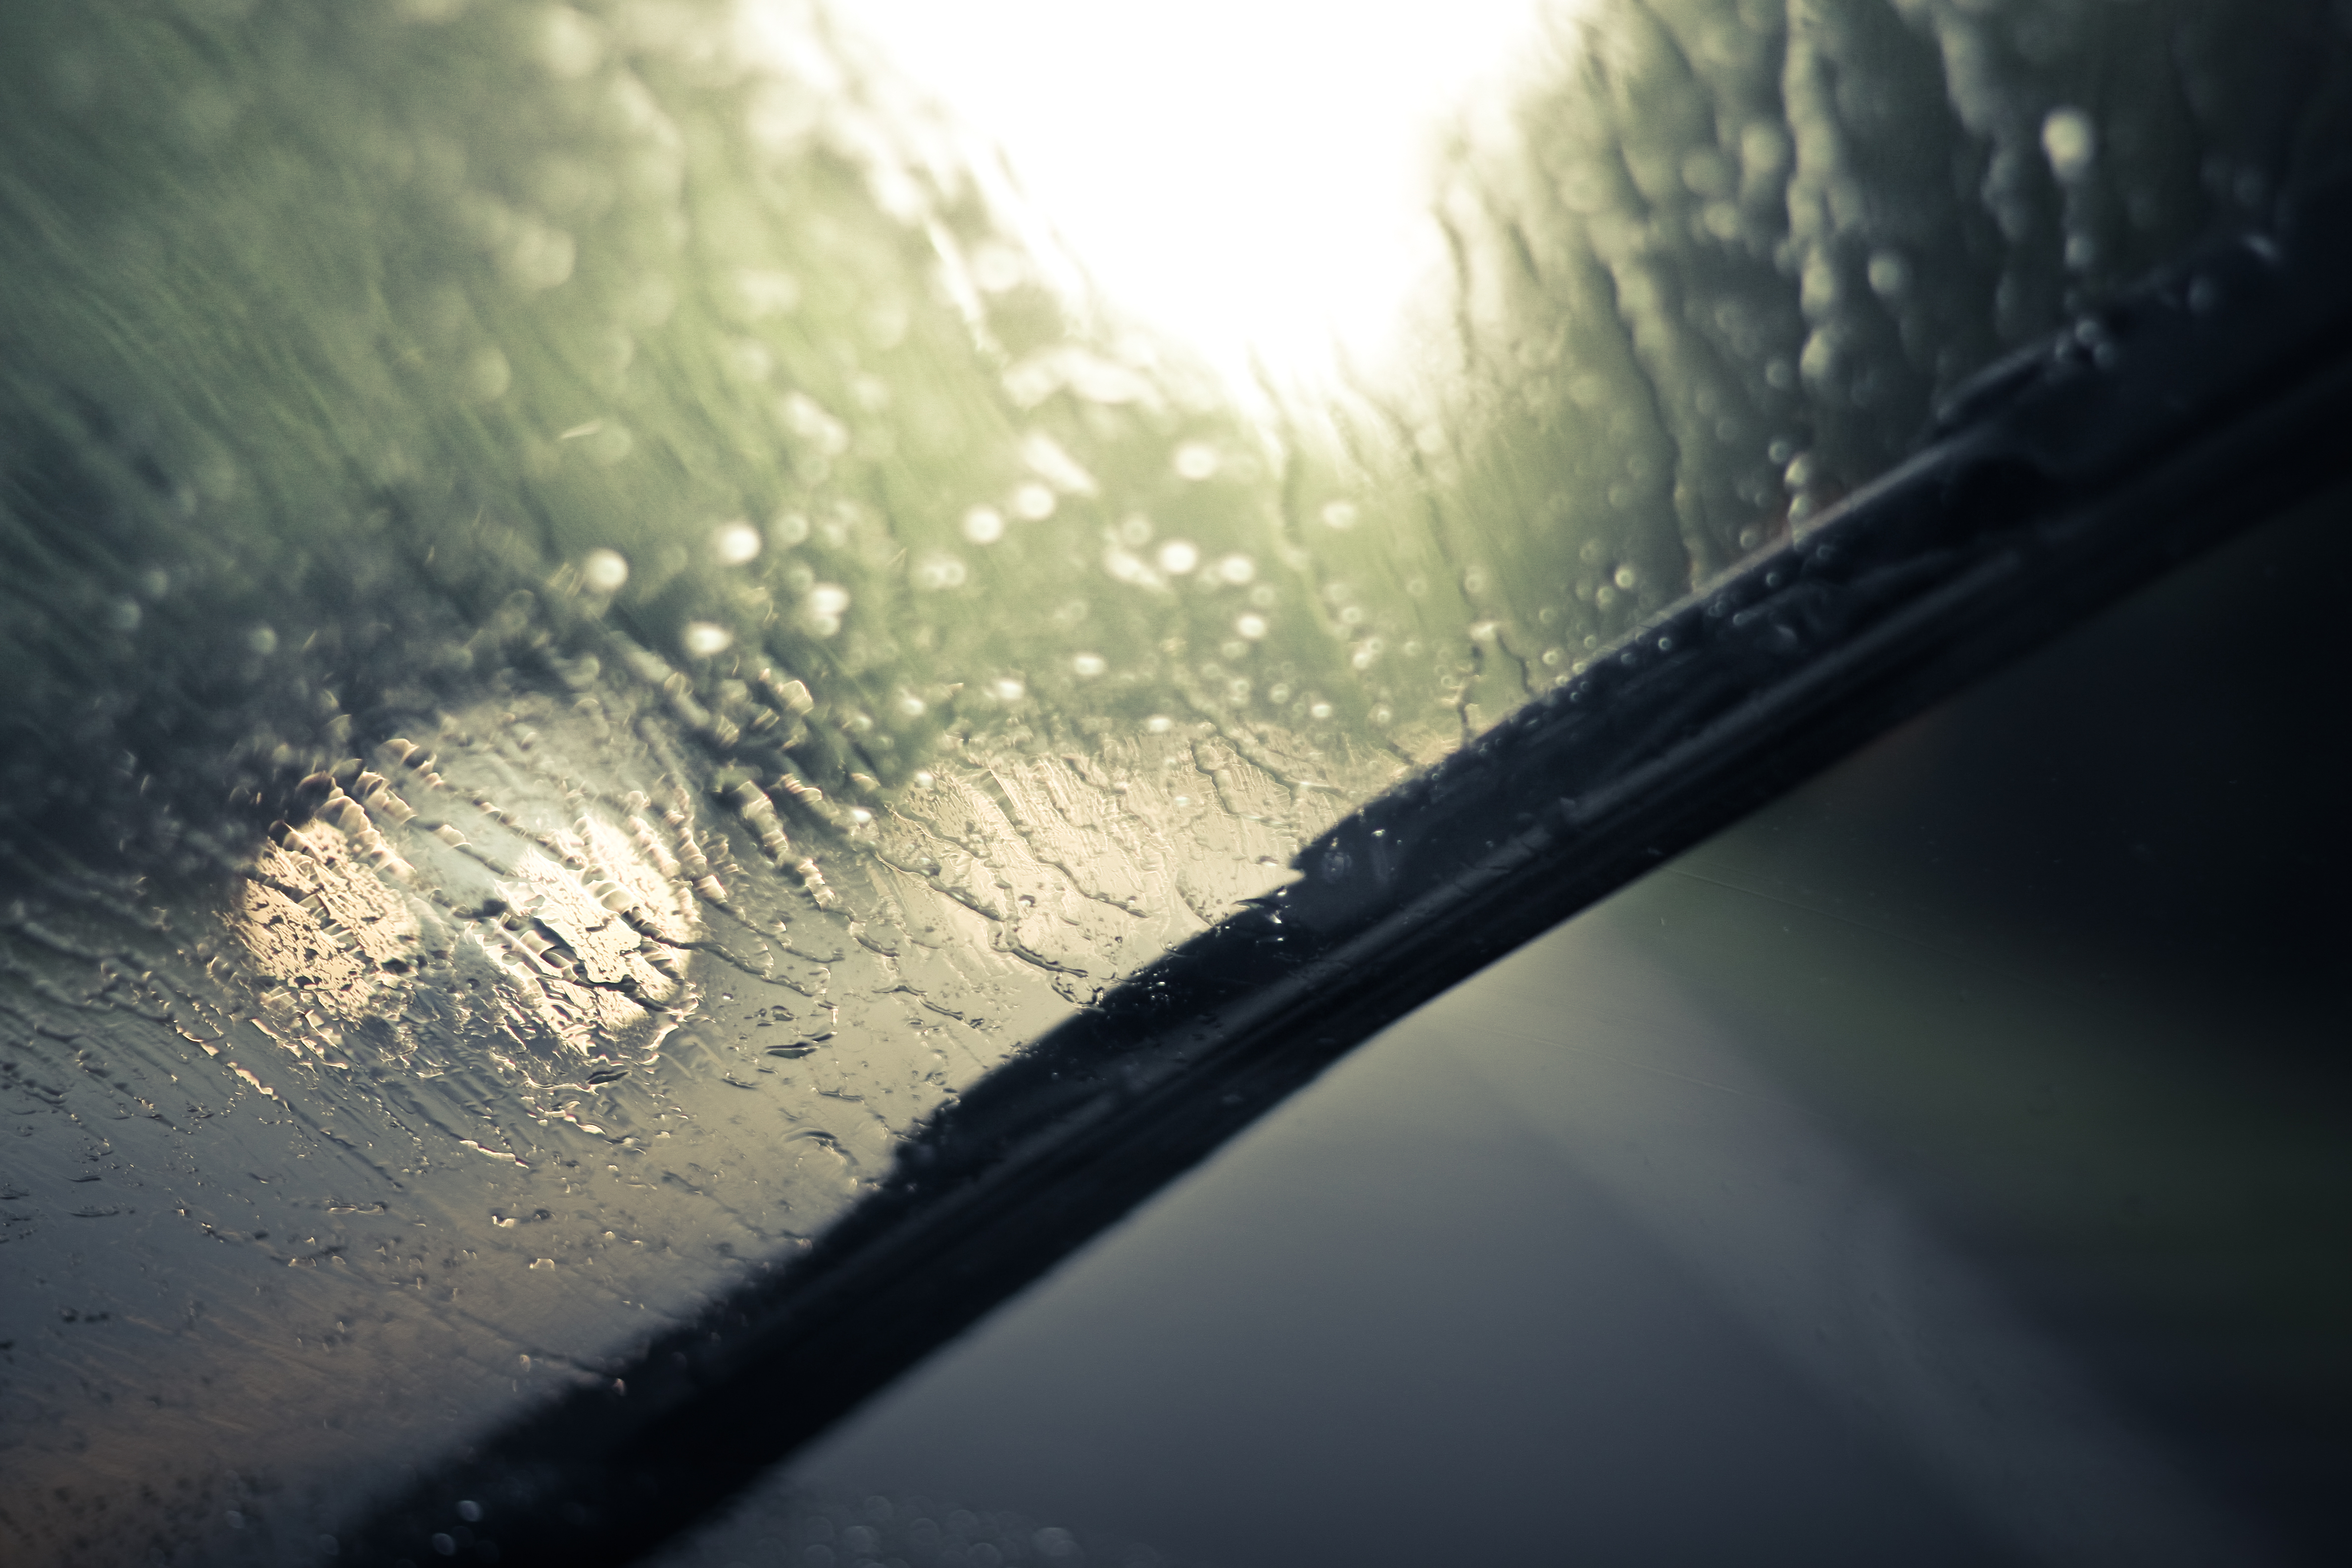 Дождь по крышам автомобилей